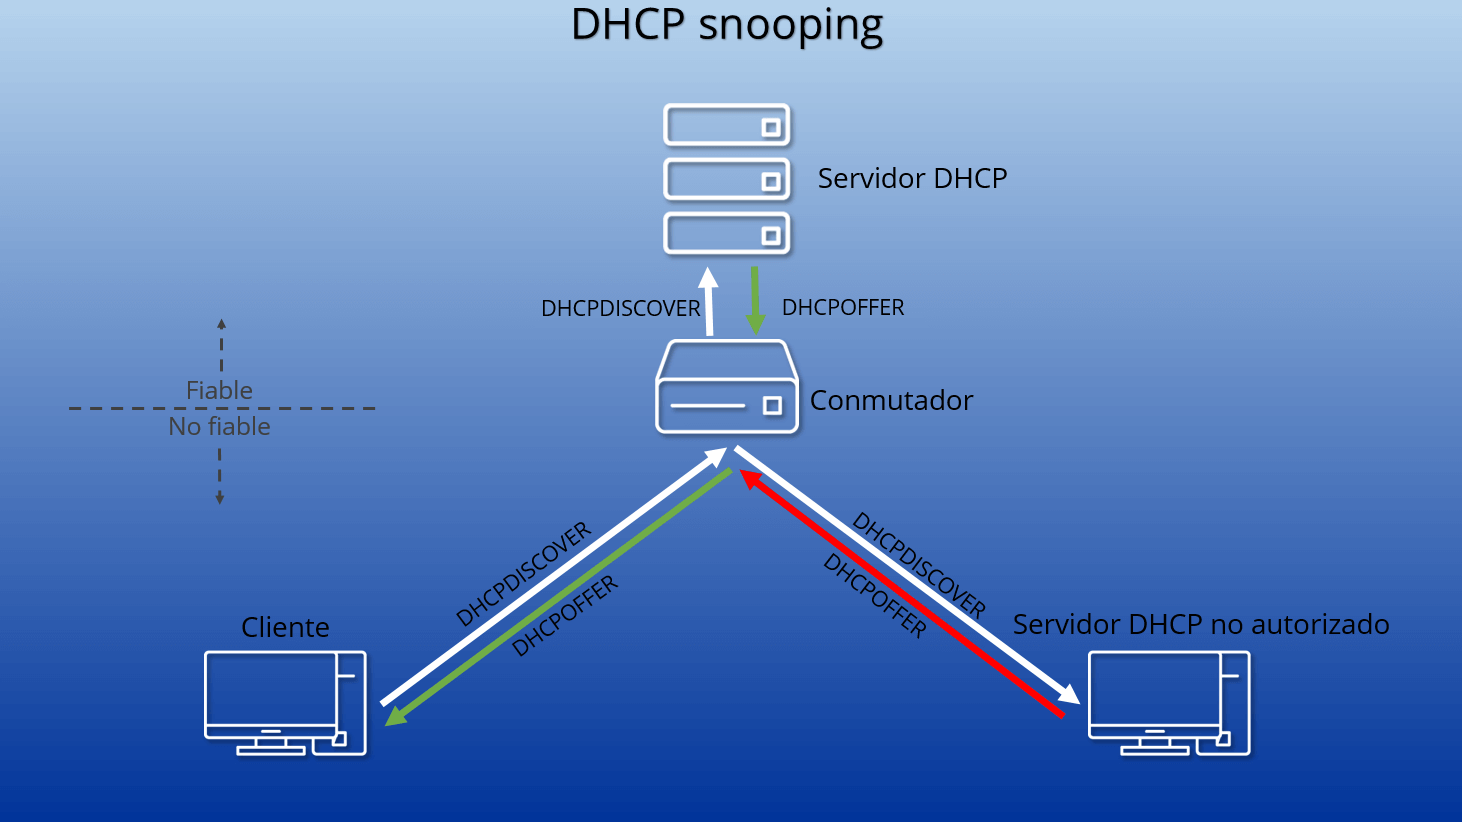 Esquema del DHCP snooping